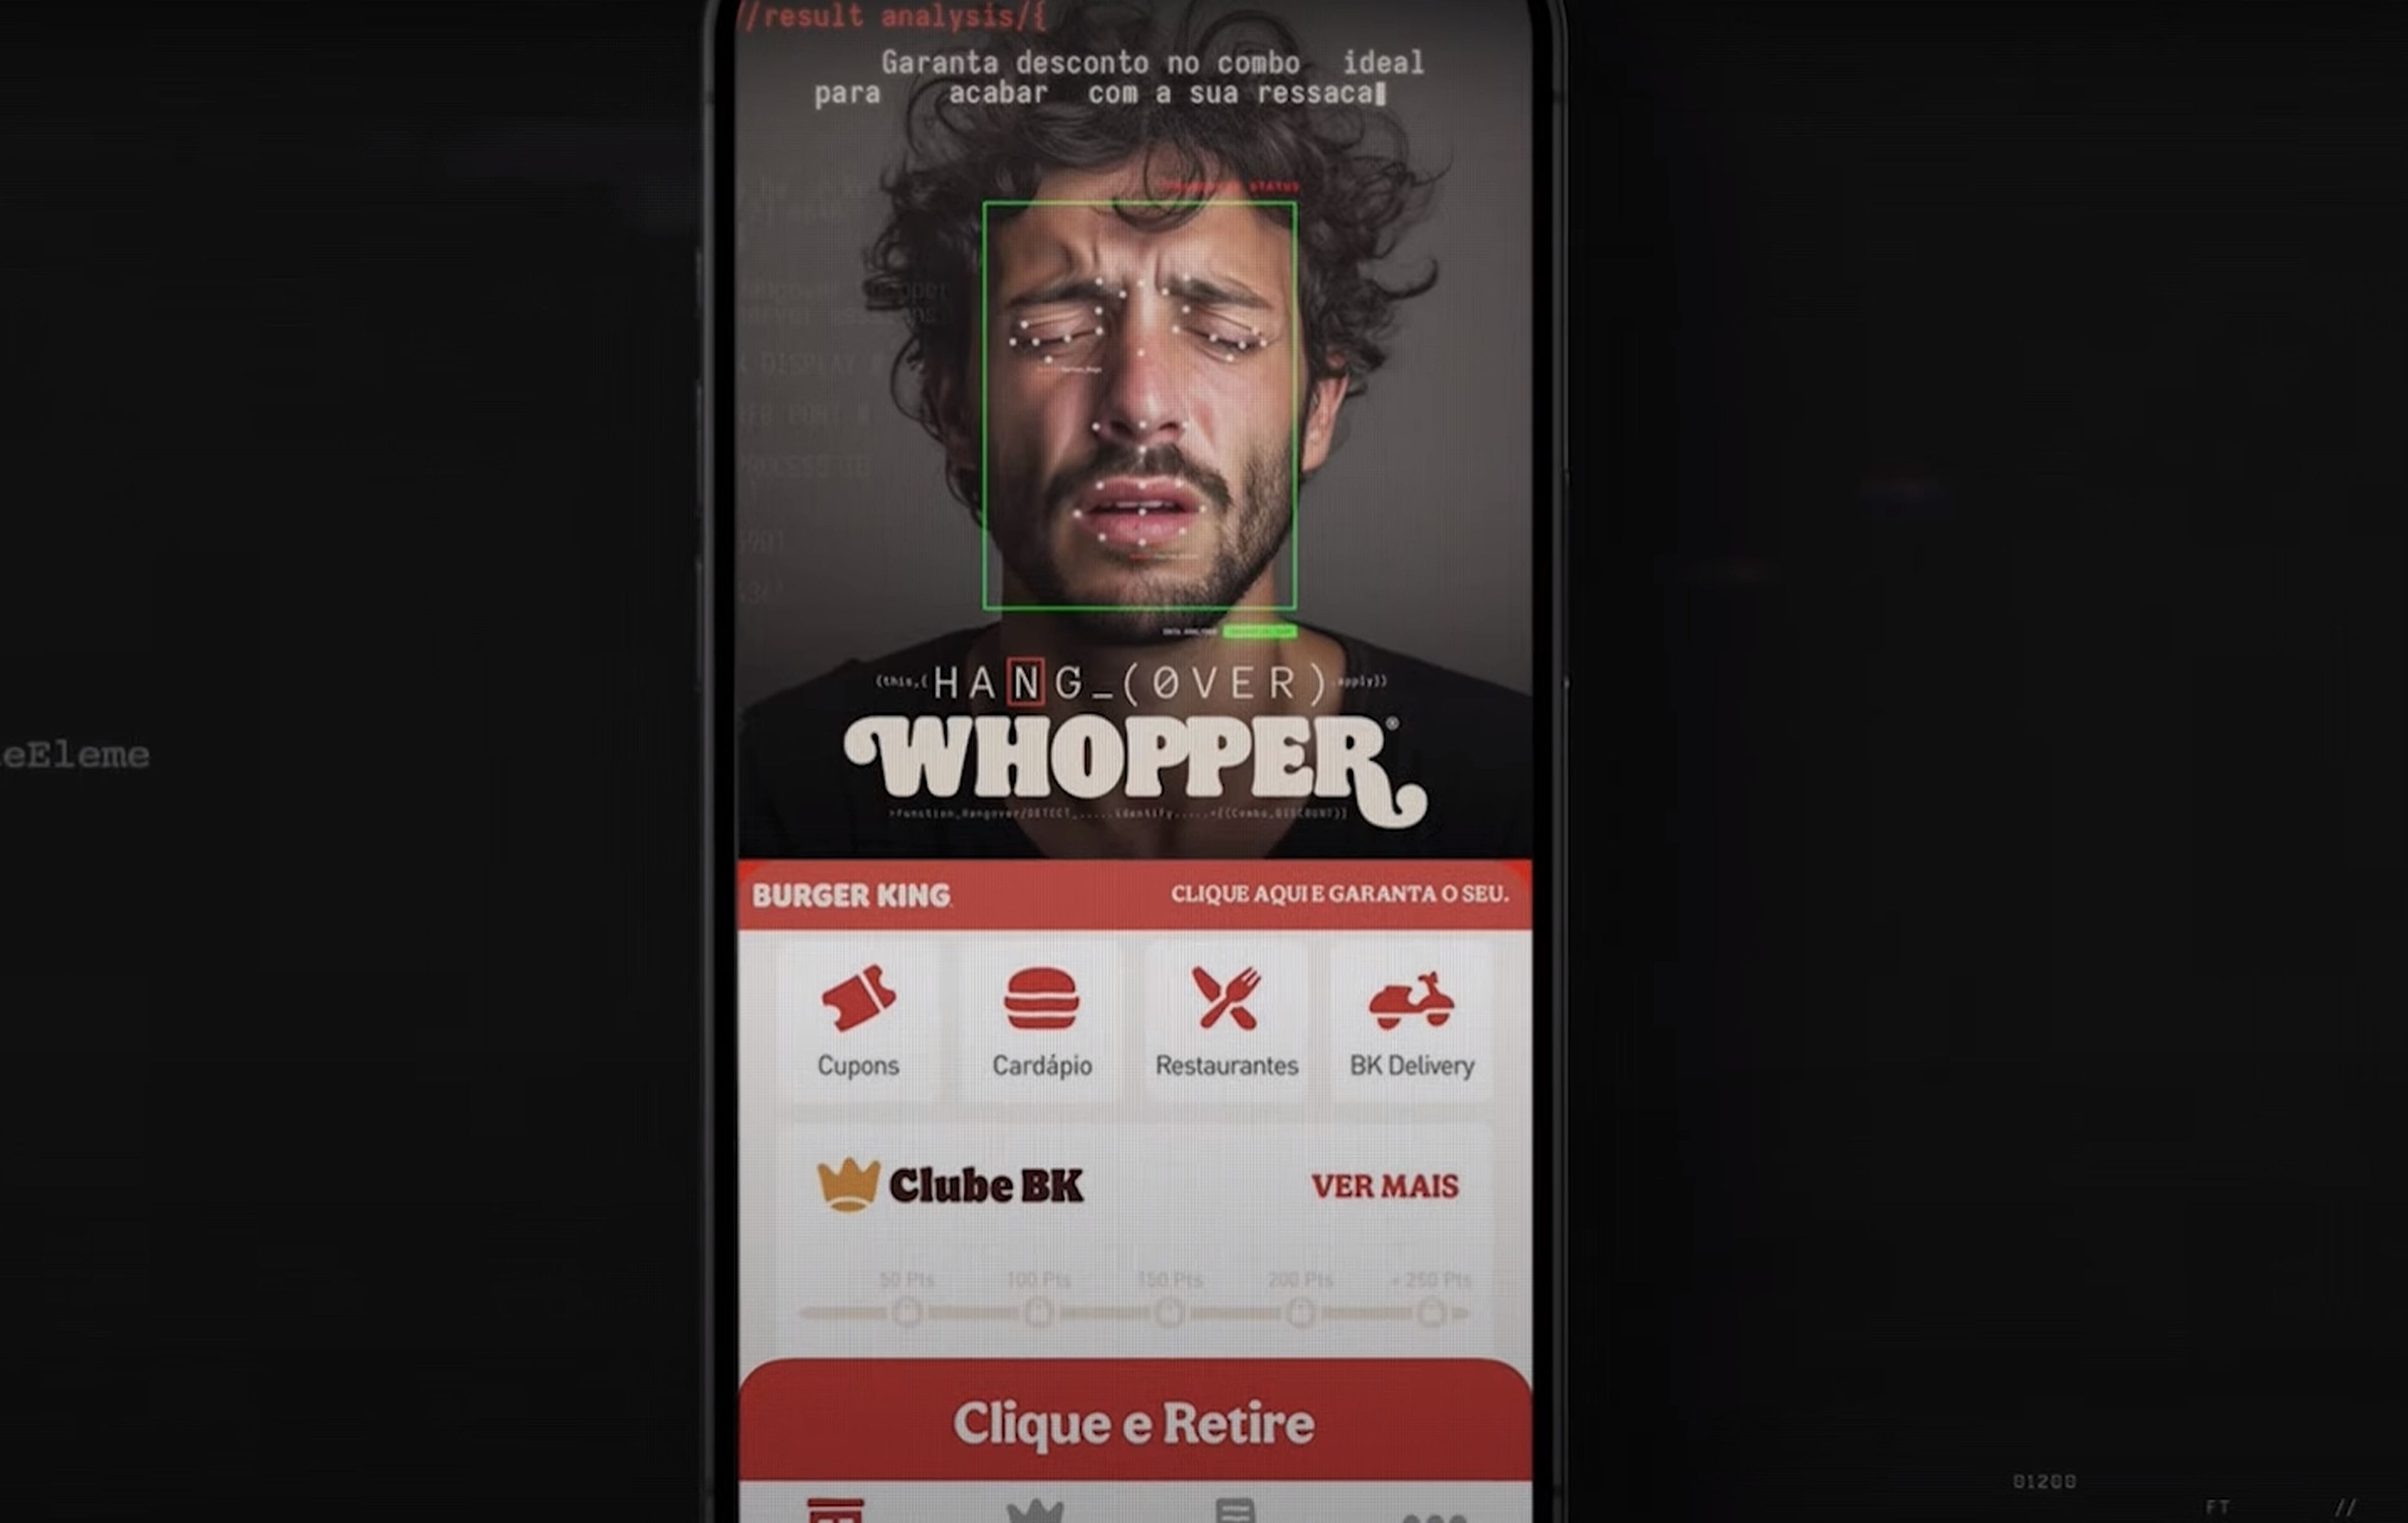 Campaña marketing reconocimiento facial Burger King